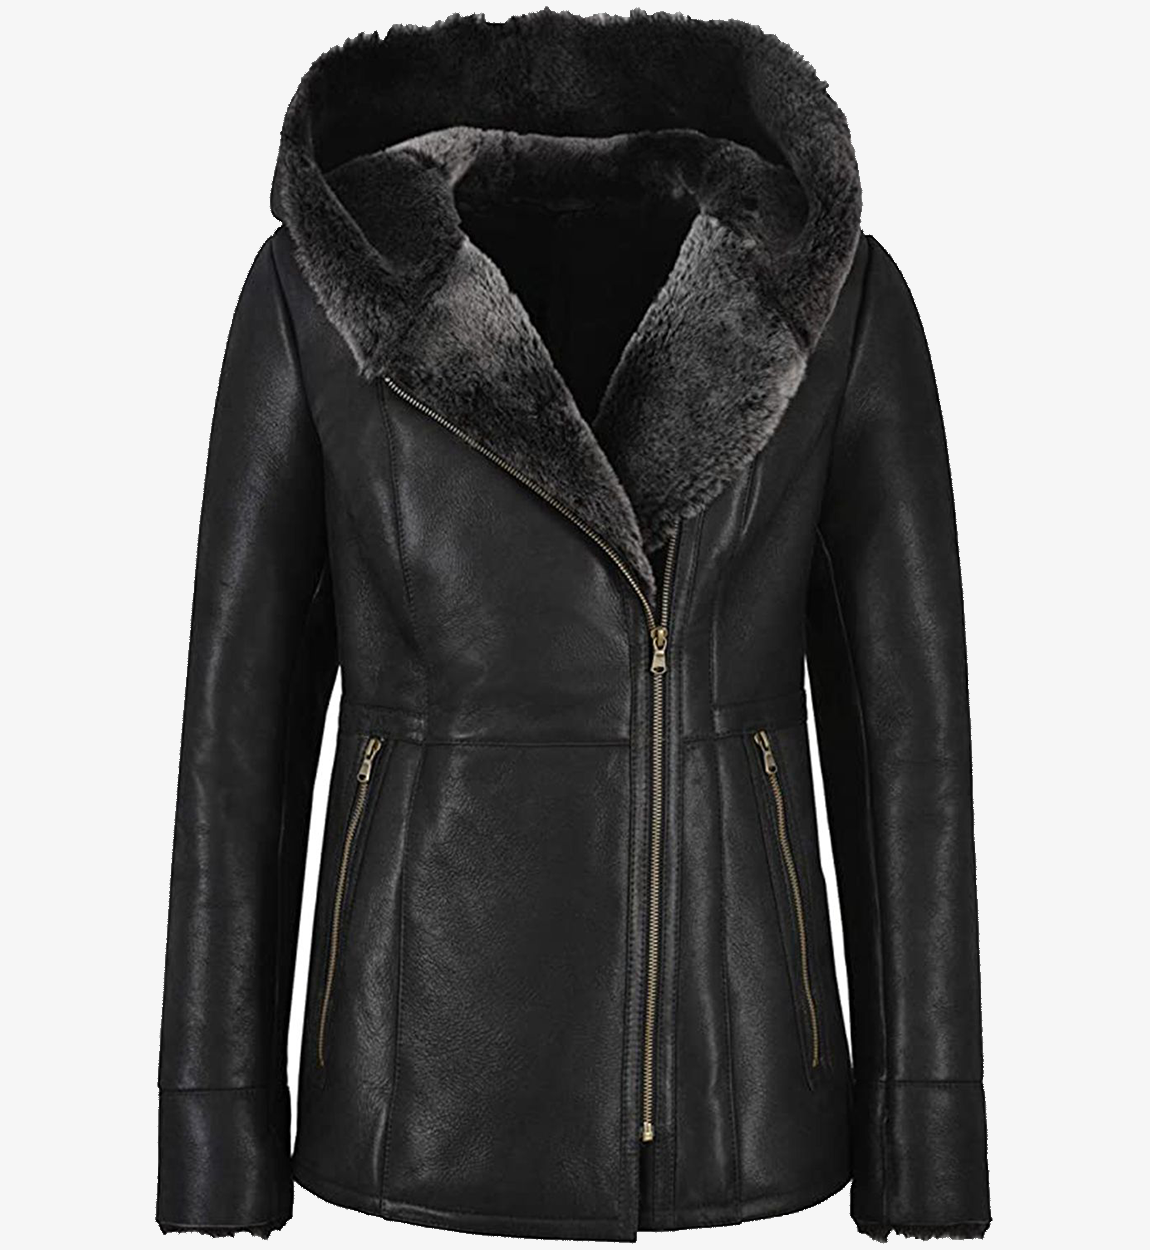 Women's Black Hooded Fur Shearling Long Leather Jacket